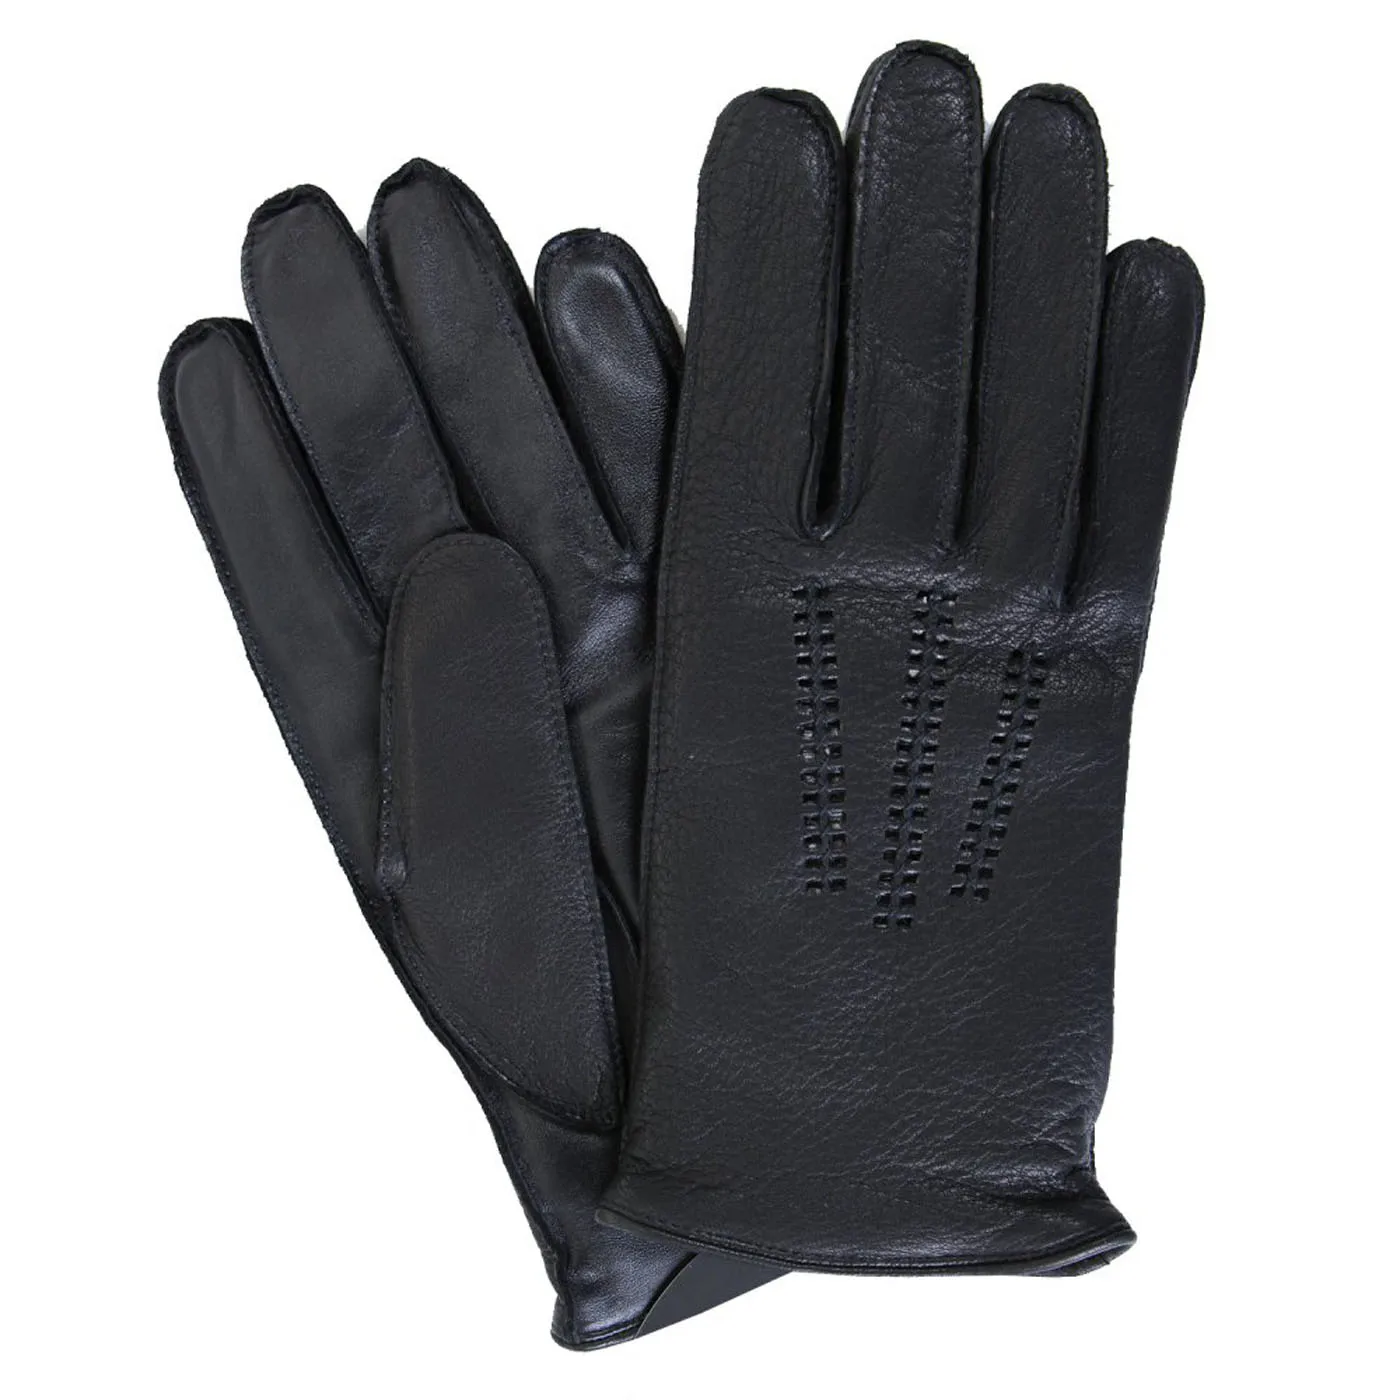 Fashion Dress Pigskin Leather Gloves,Pigskin Safety Glove,Men's Pigskin ...